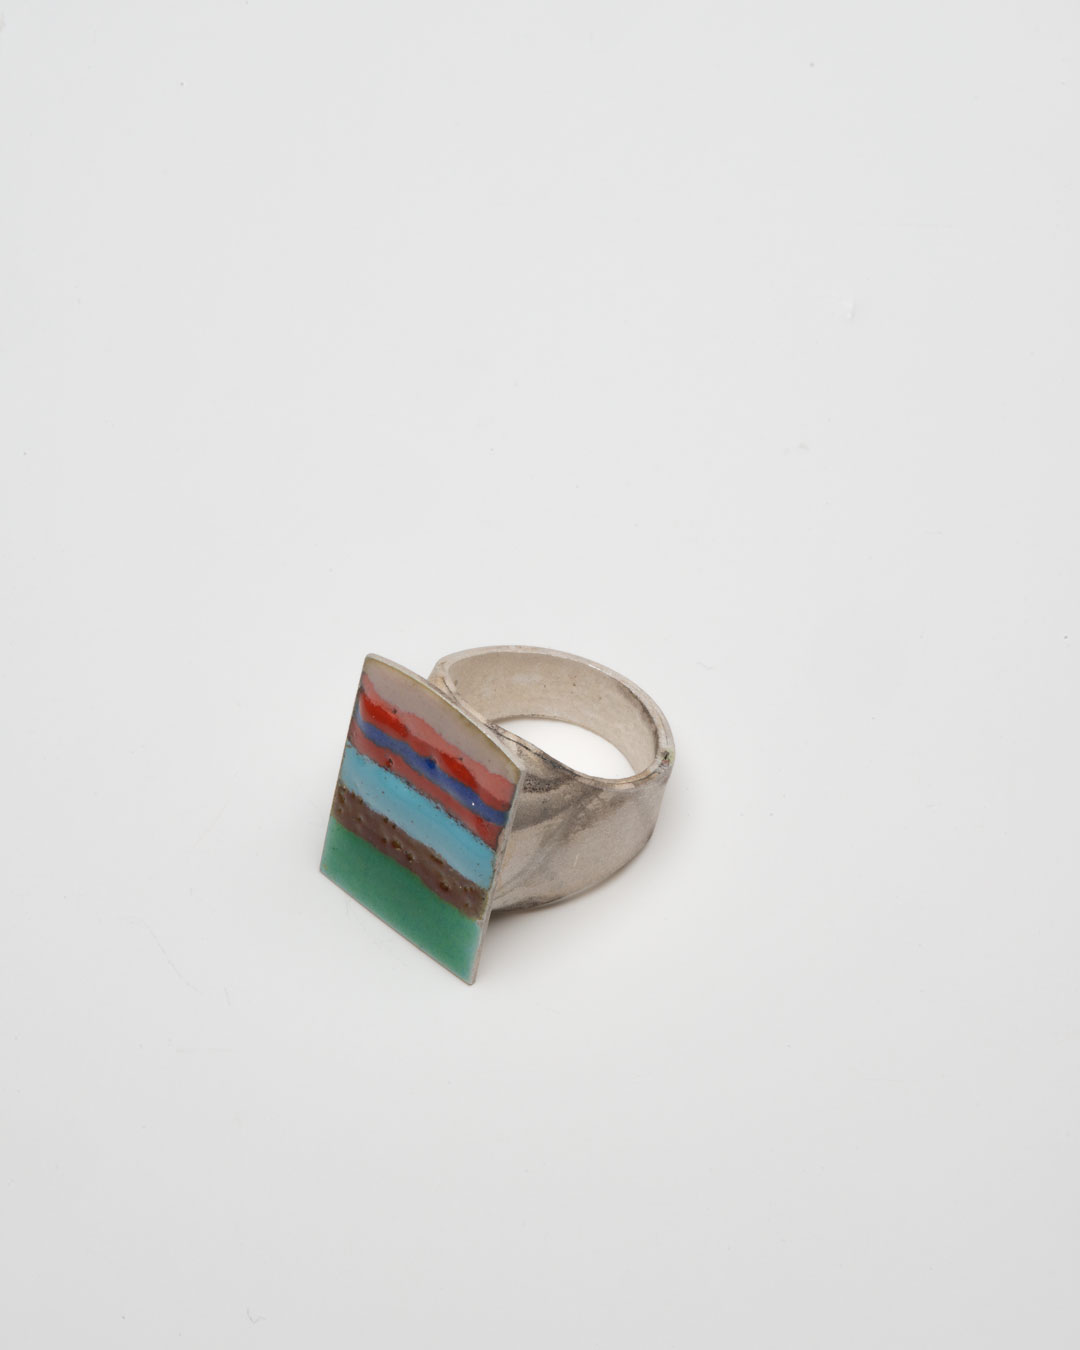 Aaron Decker, Striped Badge, 2018, ring; enamel, copper, silver, €1000